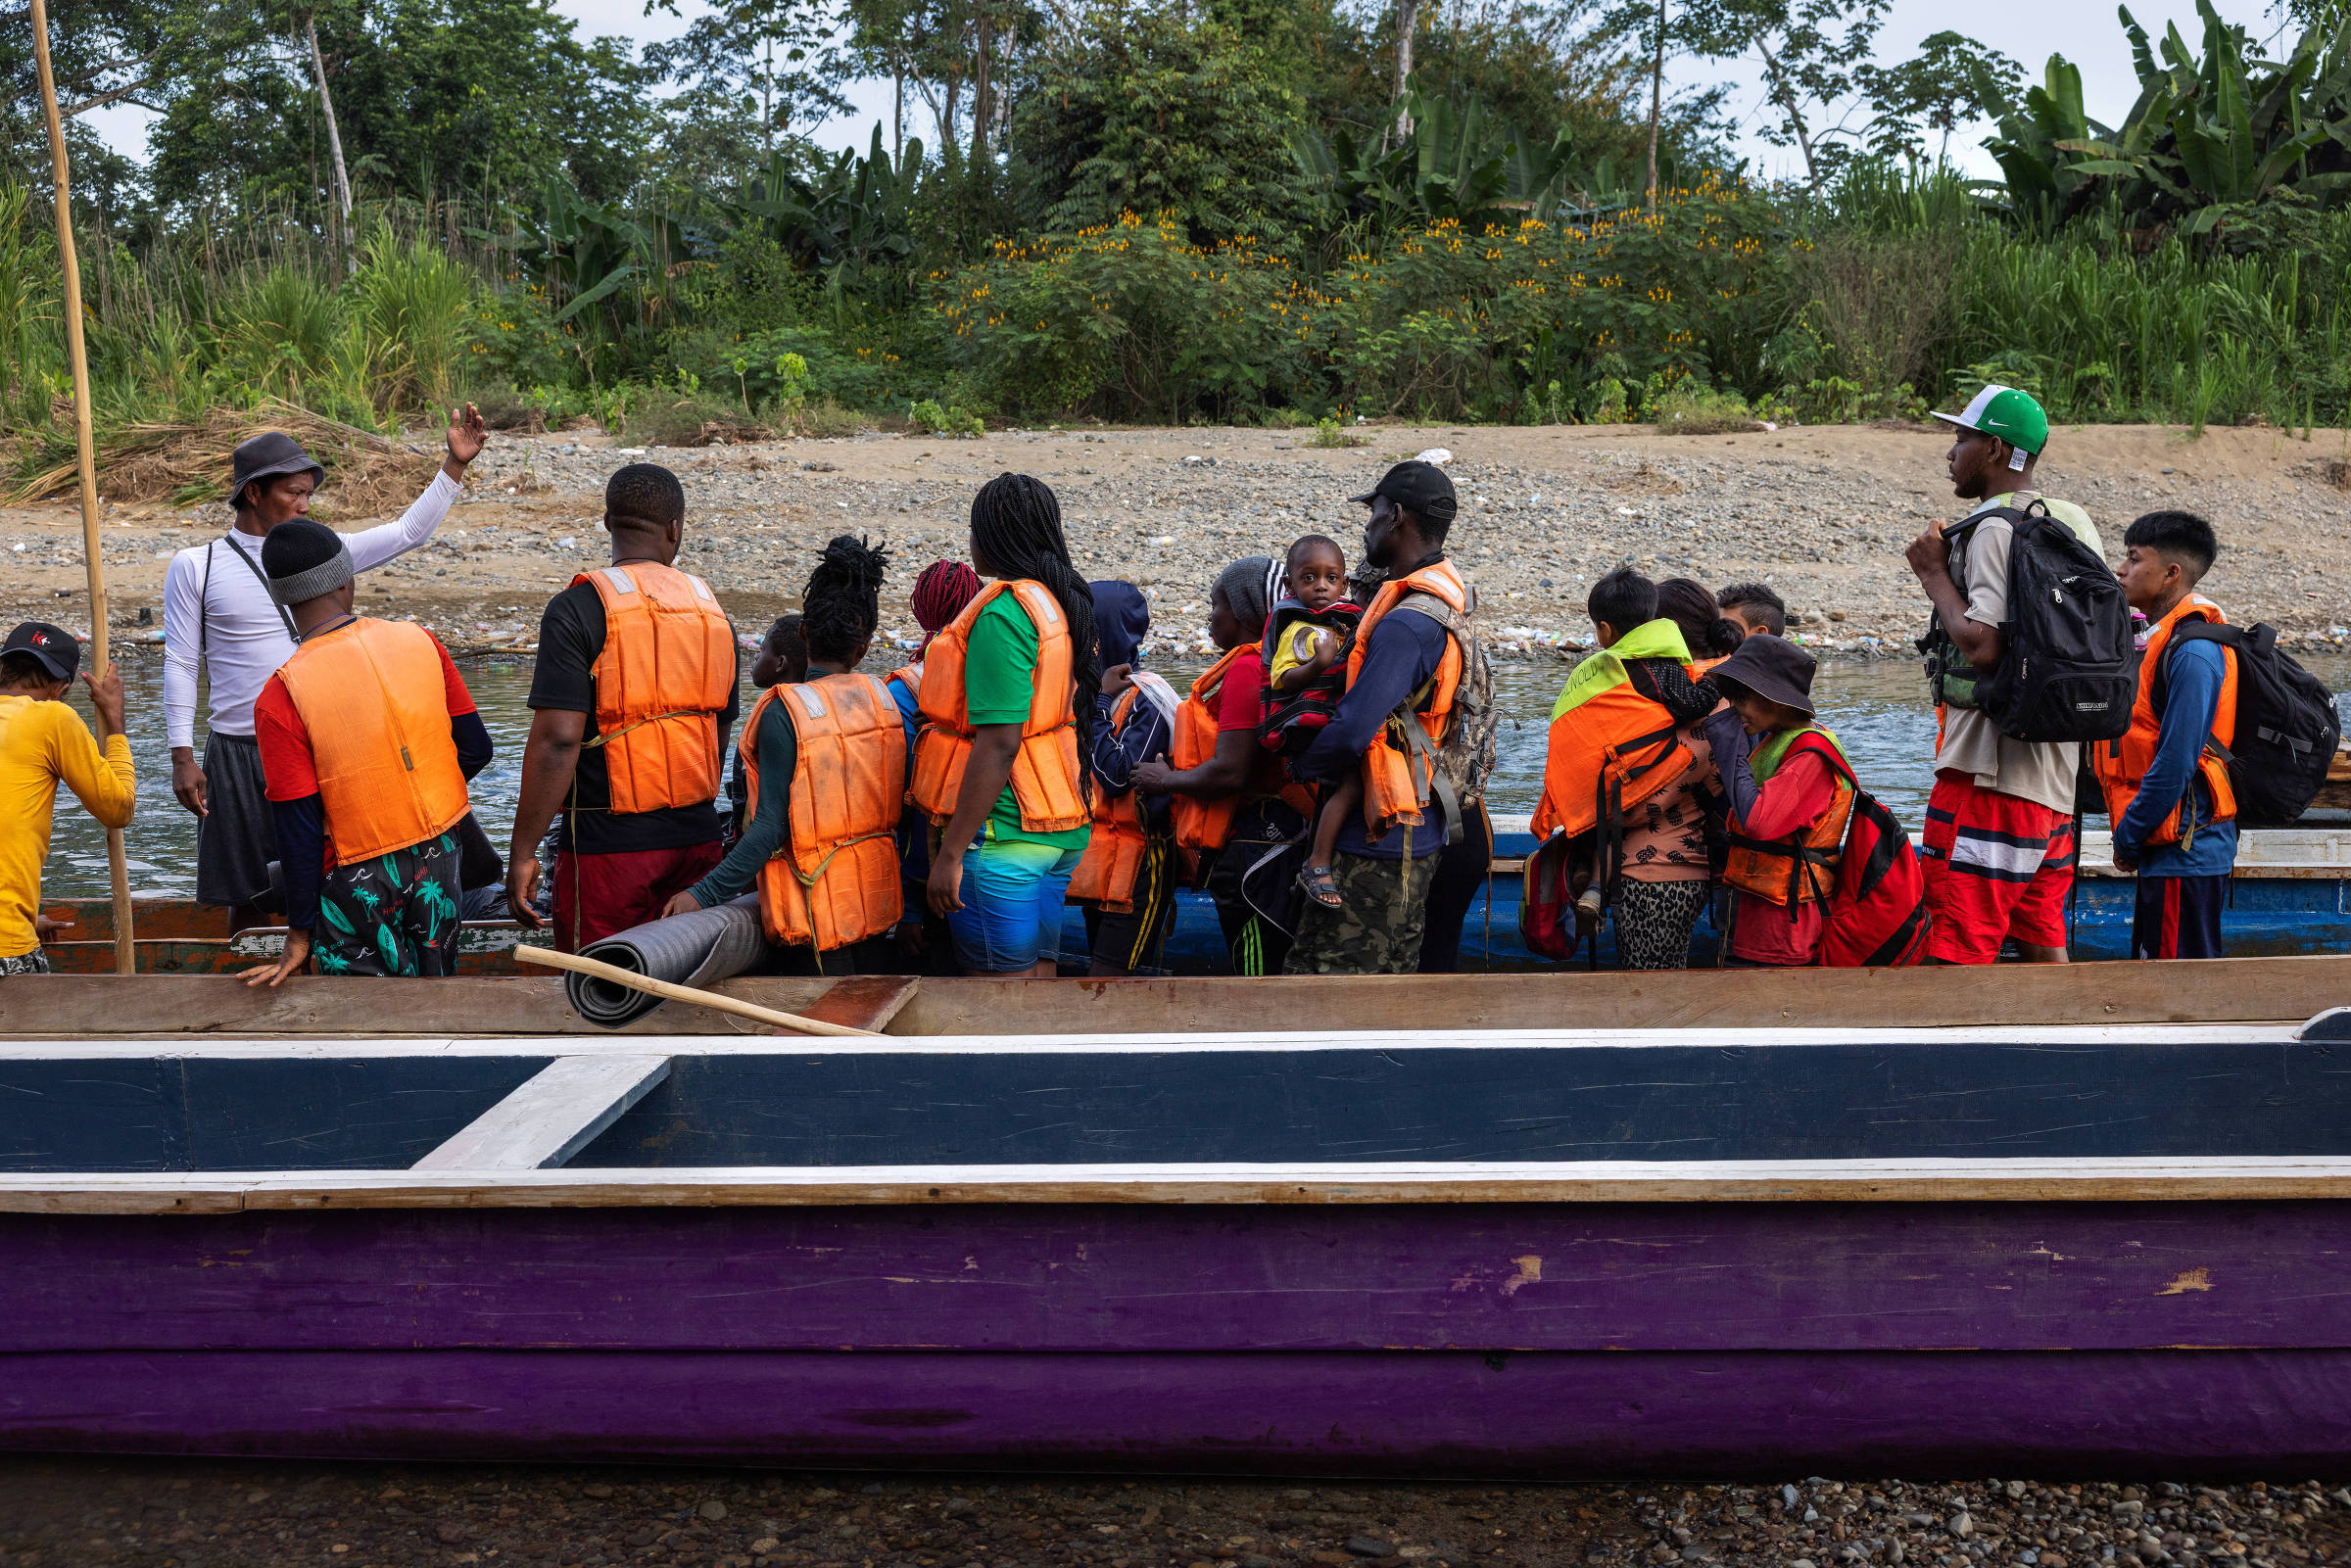 O brasileiro Fiedimio, 3, no colo do pai; eles se preparam para embarcar em uma canoa na comunidade indígena de Bajo Chiquito que os levará pelo rio Tuqueza até uma estação migratória